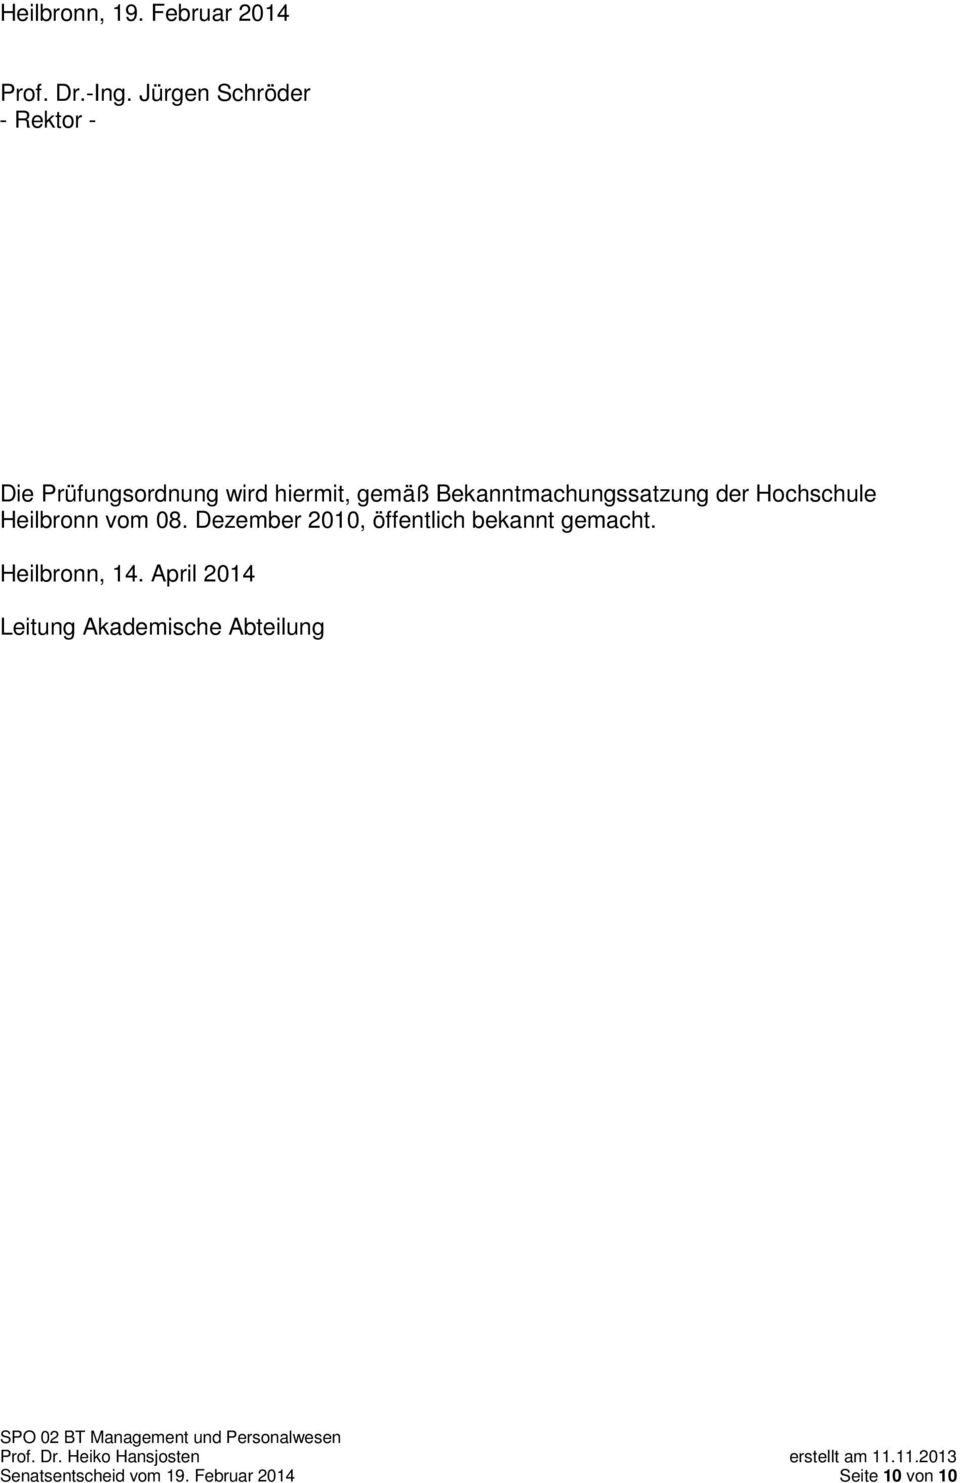 Bekanntmachungssatzung der Hochschule Heilbronn vom 08.